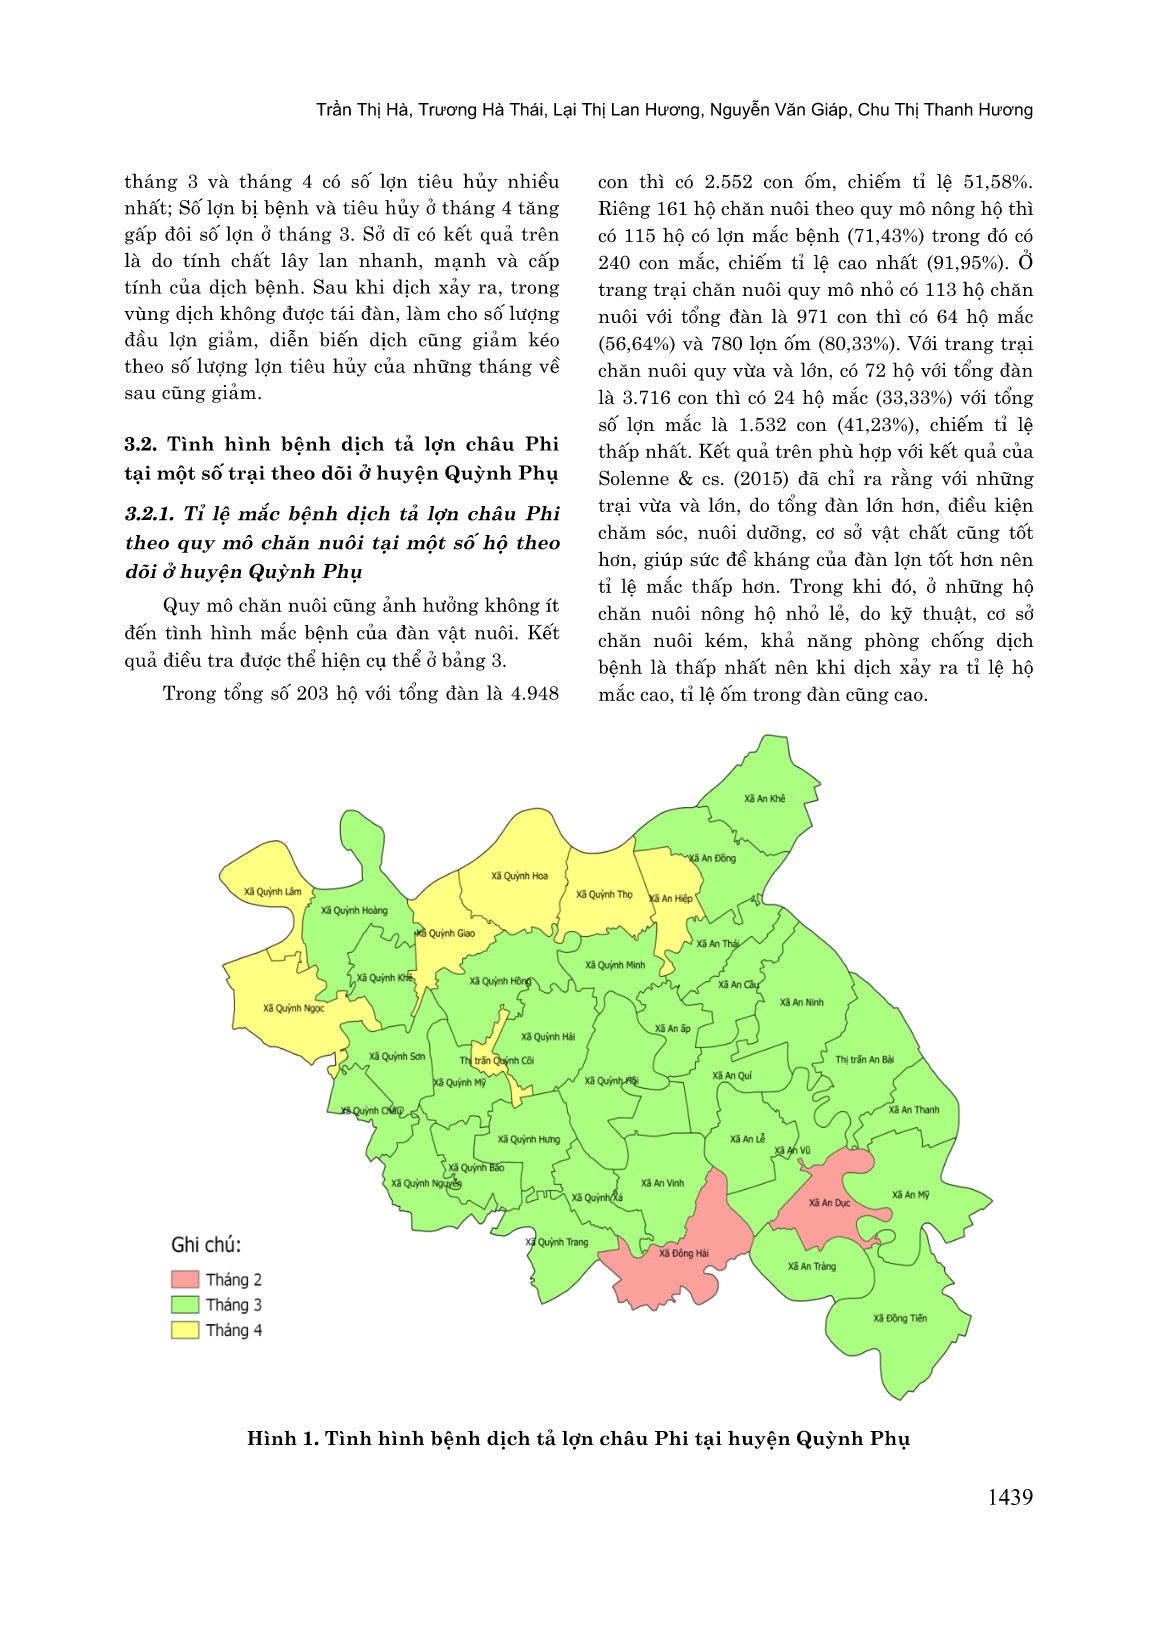 Nghiên cứu một số đặc điểm dịch tễ học bệnh dịch tả lợn châu phi (ASF) tại huyện Quỳnh Phụ, tỉnh Thái Bình trang 4